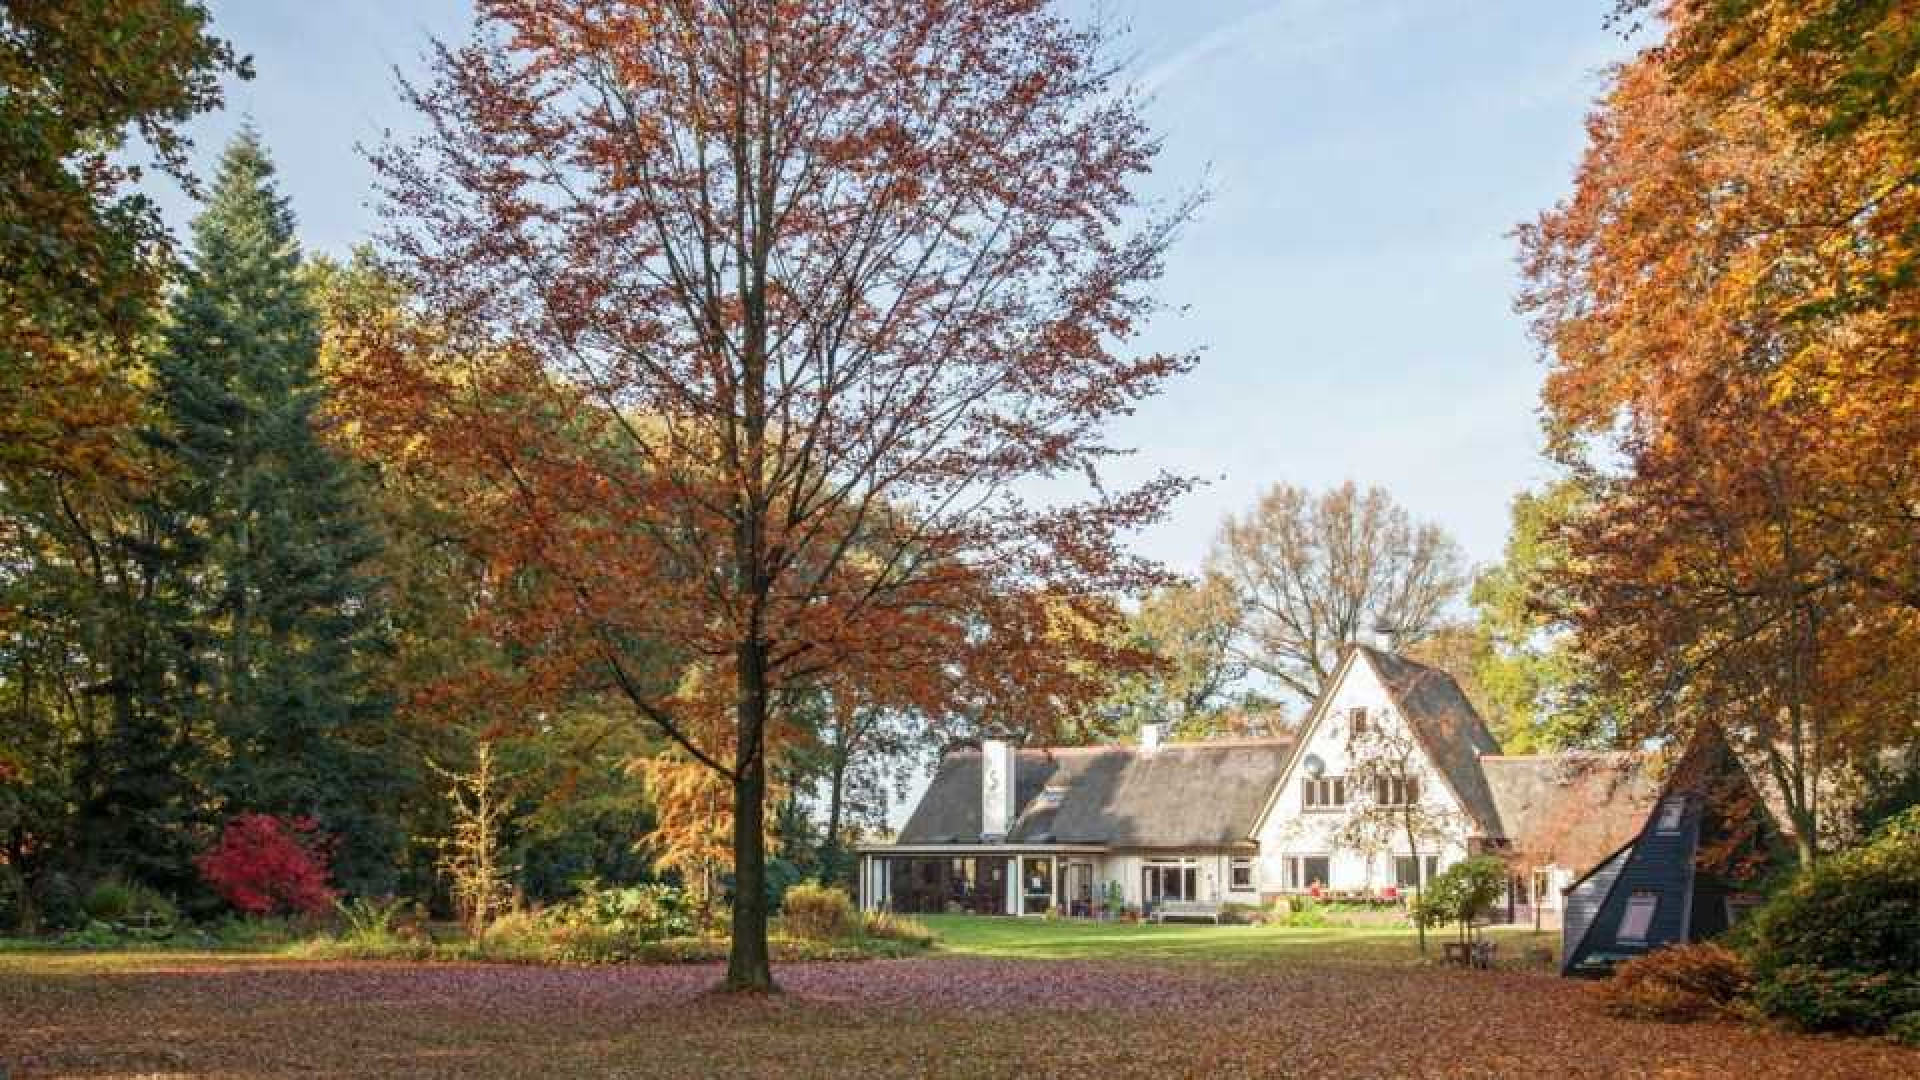 Oud PvdA topman Marcel van Dam haalt zijn landhuis uit de verkoop. Zie foto's 1